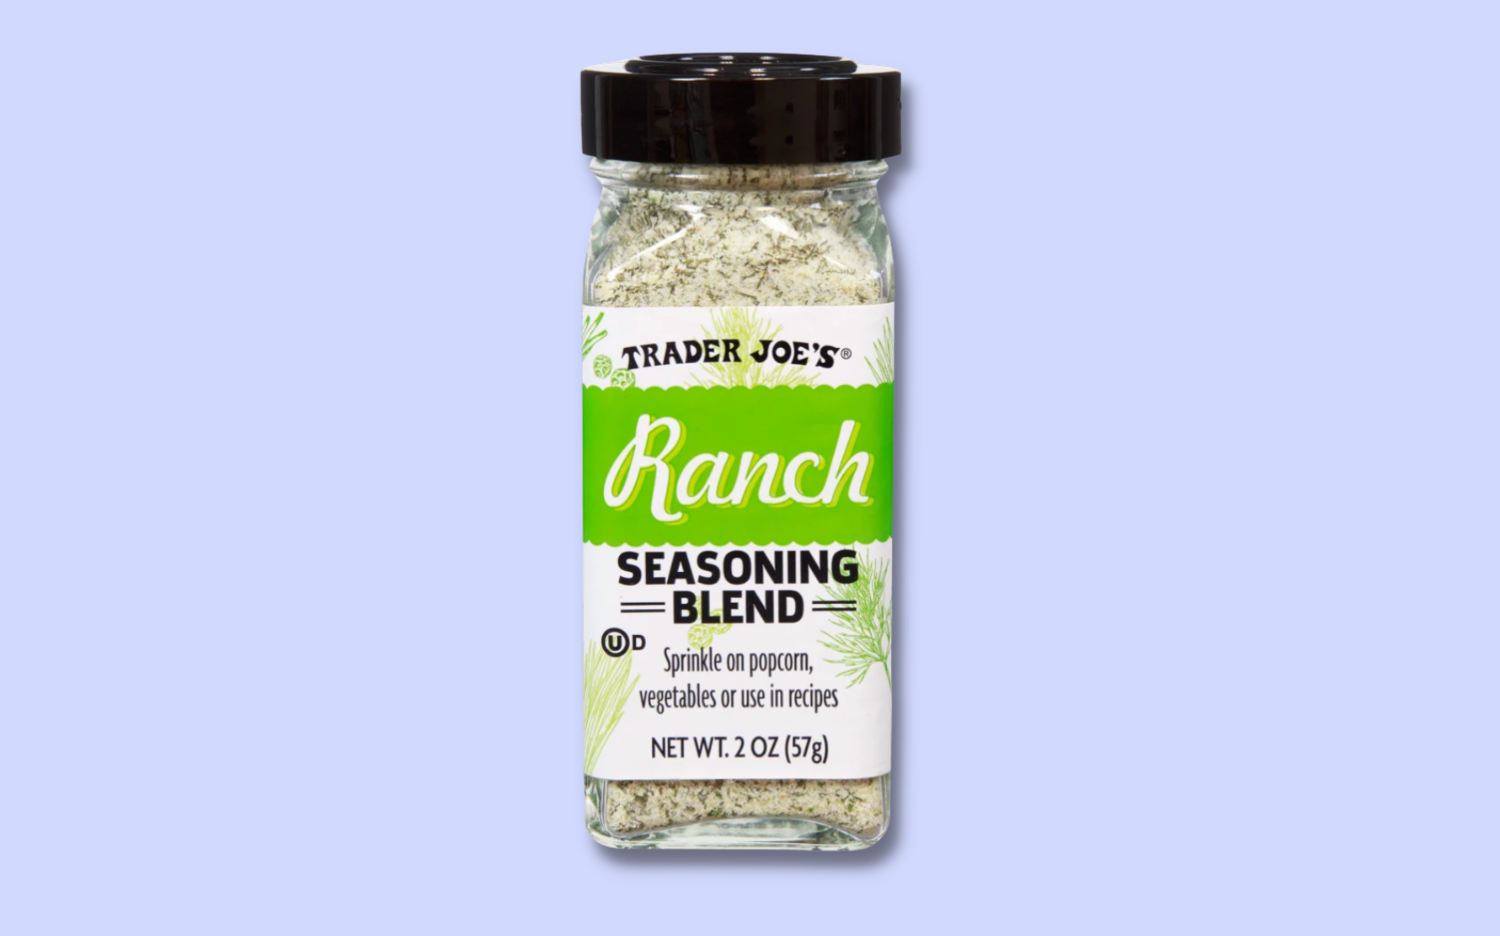 trader joe's ranch seasoning blend